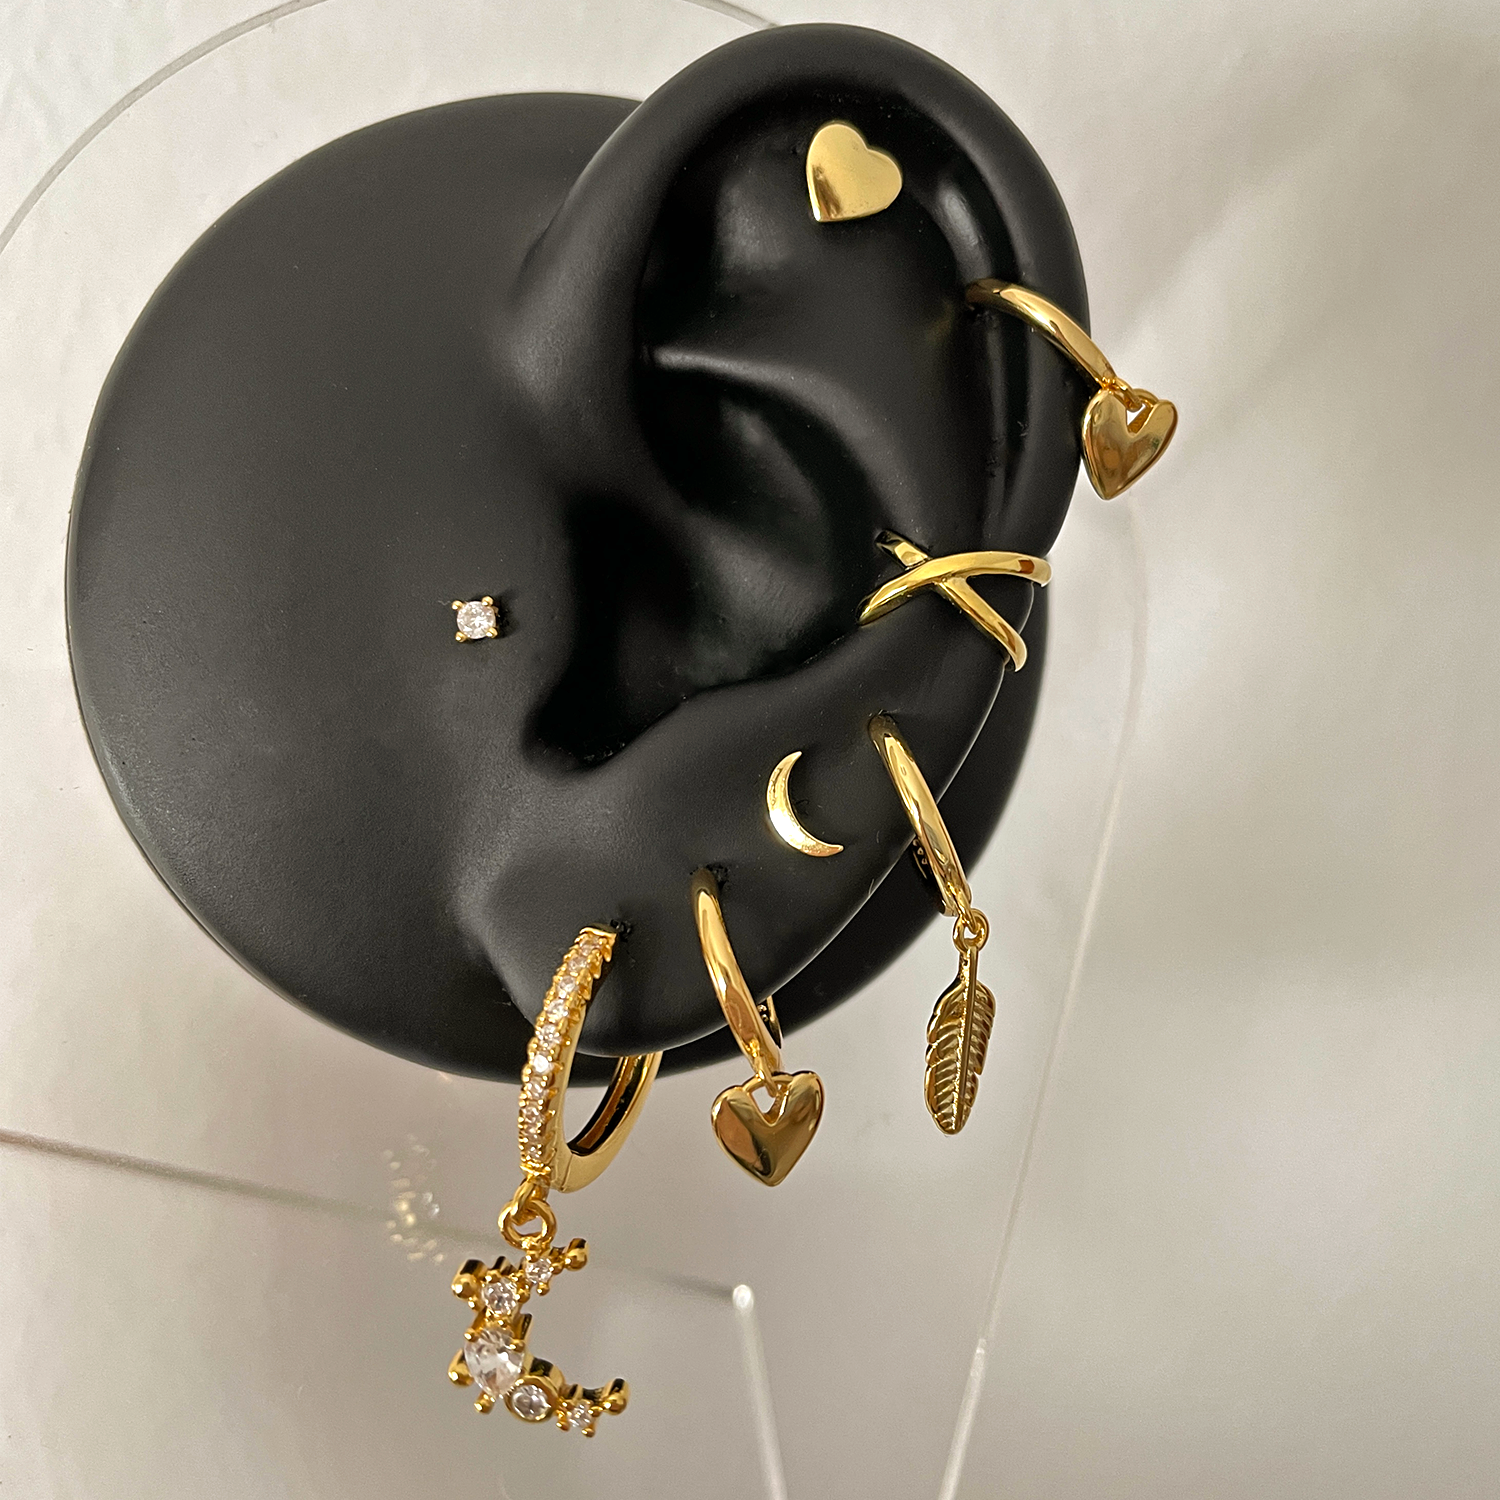 Ayla White Gold Earrings